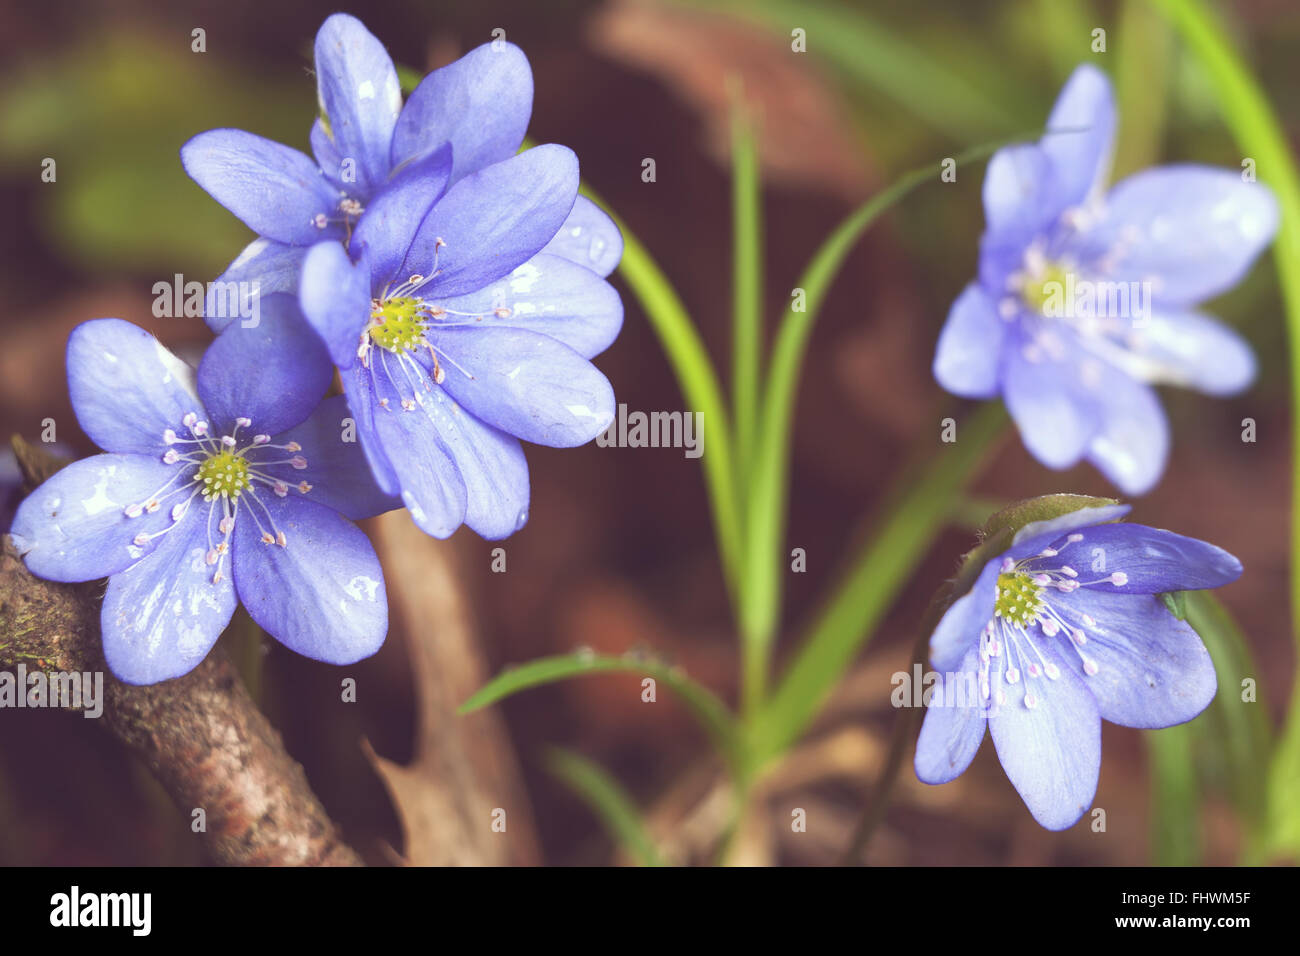 Début du printemps bleu fleurs hepatica ou snowdrop dans son contexte naturel poussant sur un sol forestier. Image printemps rural naturel Banque D'Images